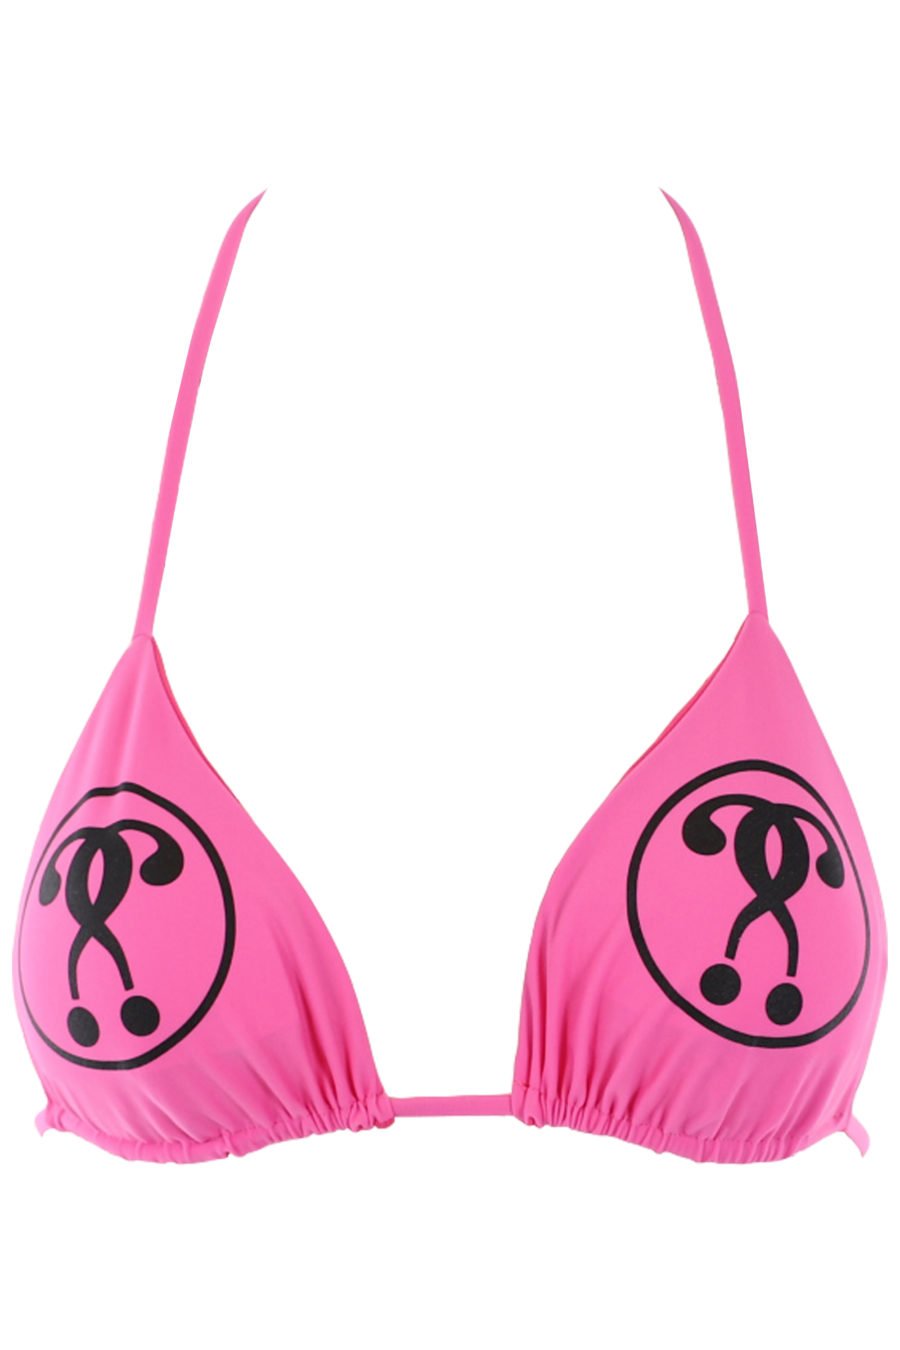 Top de bikini fucsia con logo doble pregunta - IMG 0780